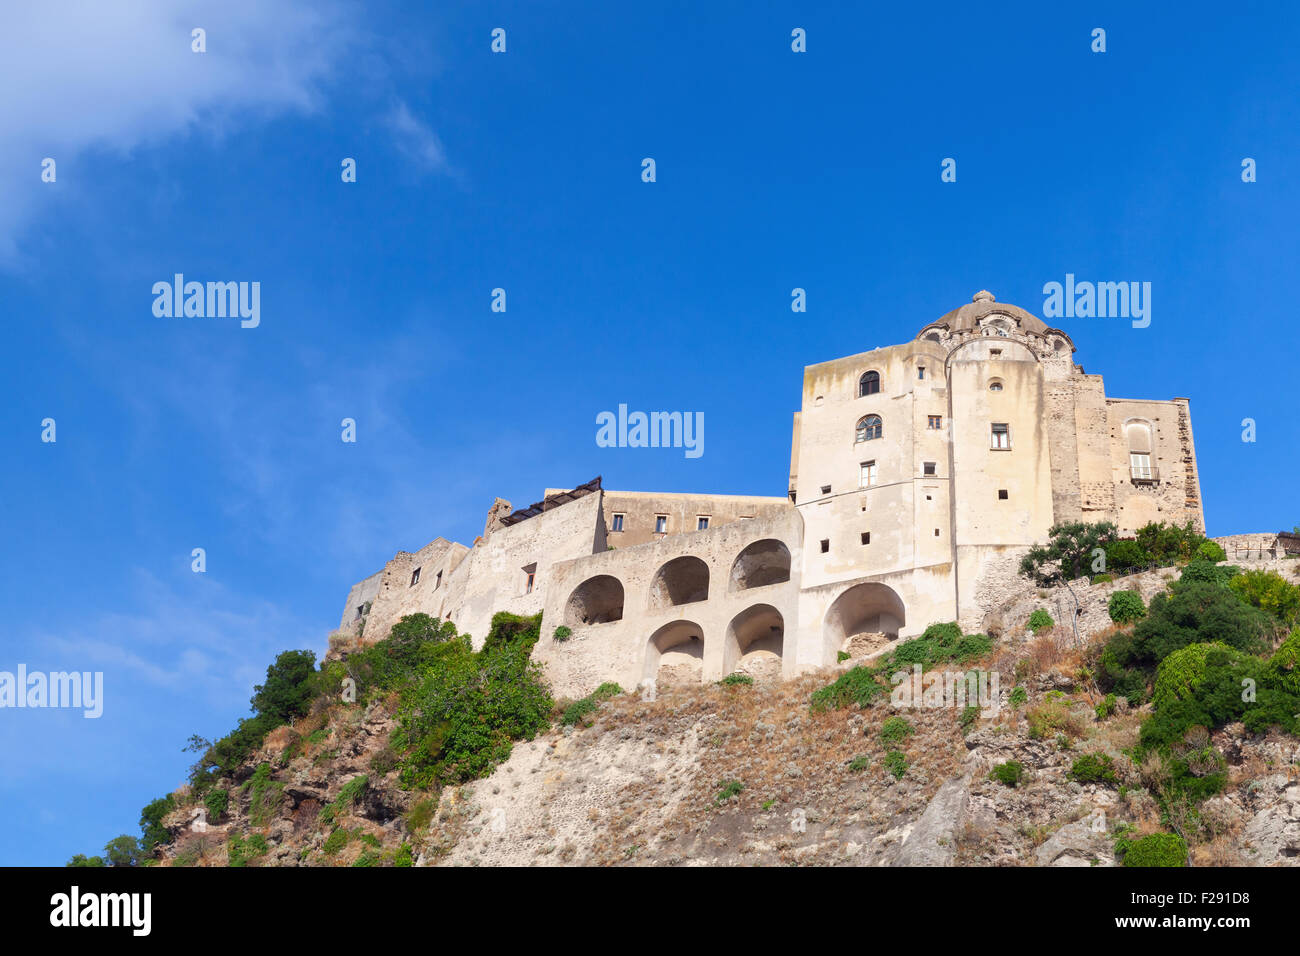 Ancien château Aragonais sur le rocher, l'île d'Ischia, Italie Banque D'Images